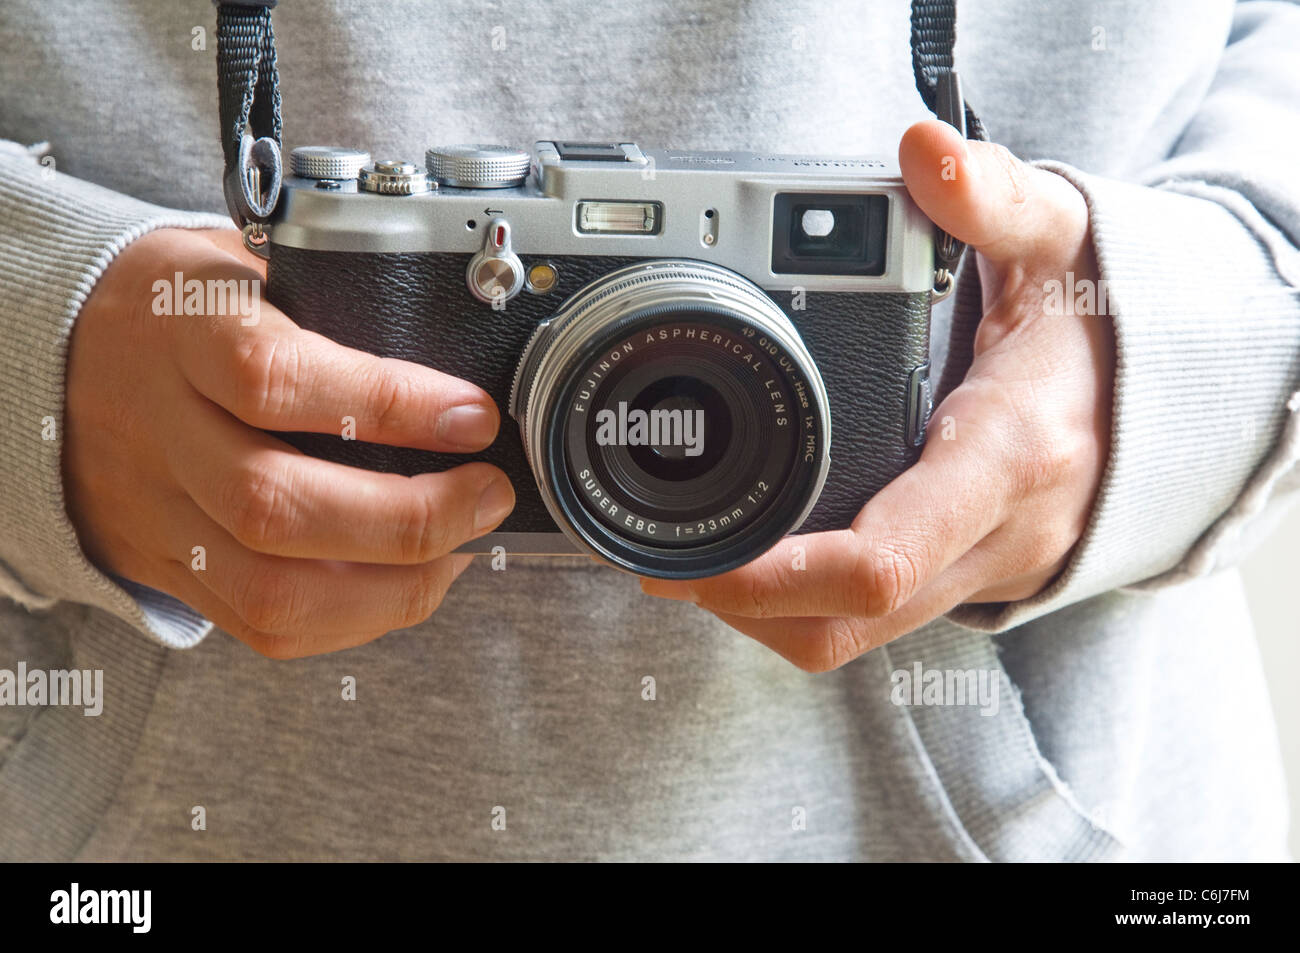 Un Fuji X100 (stile retrò) fotocamera digitale, nota per le sue dimensioni compatte, lente fissa e qualità 12MP sensore. Lanciato nel 2011. Foto Stock